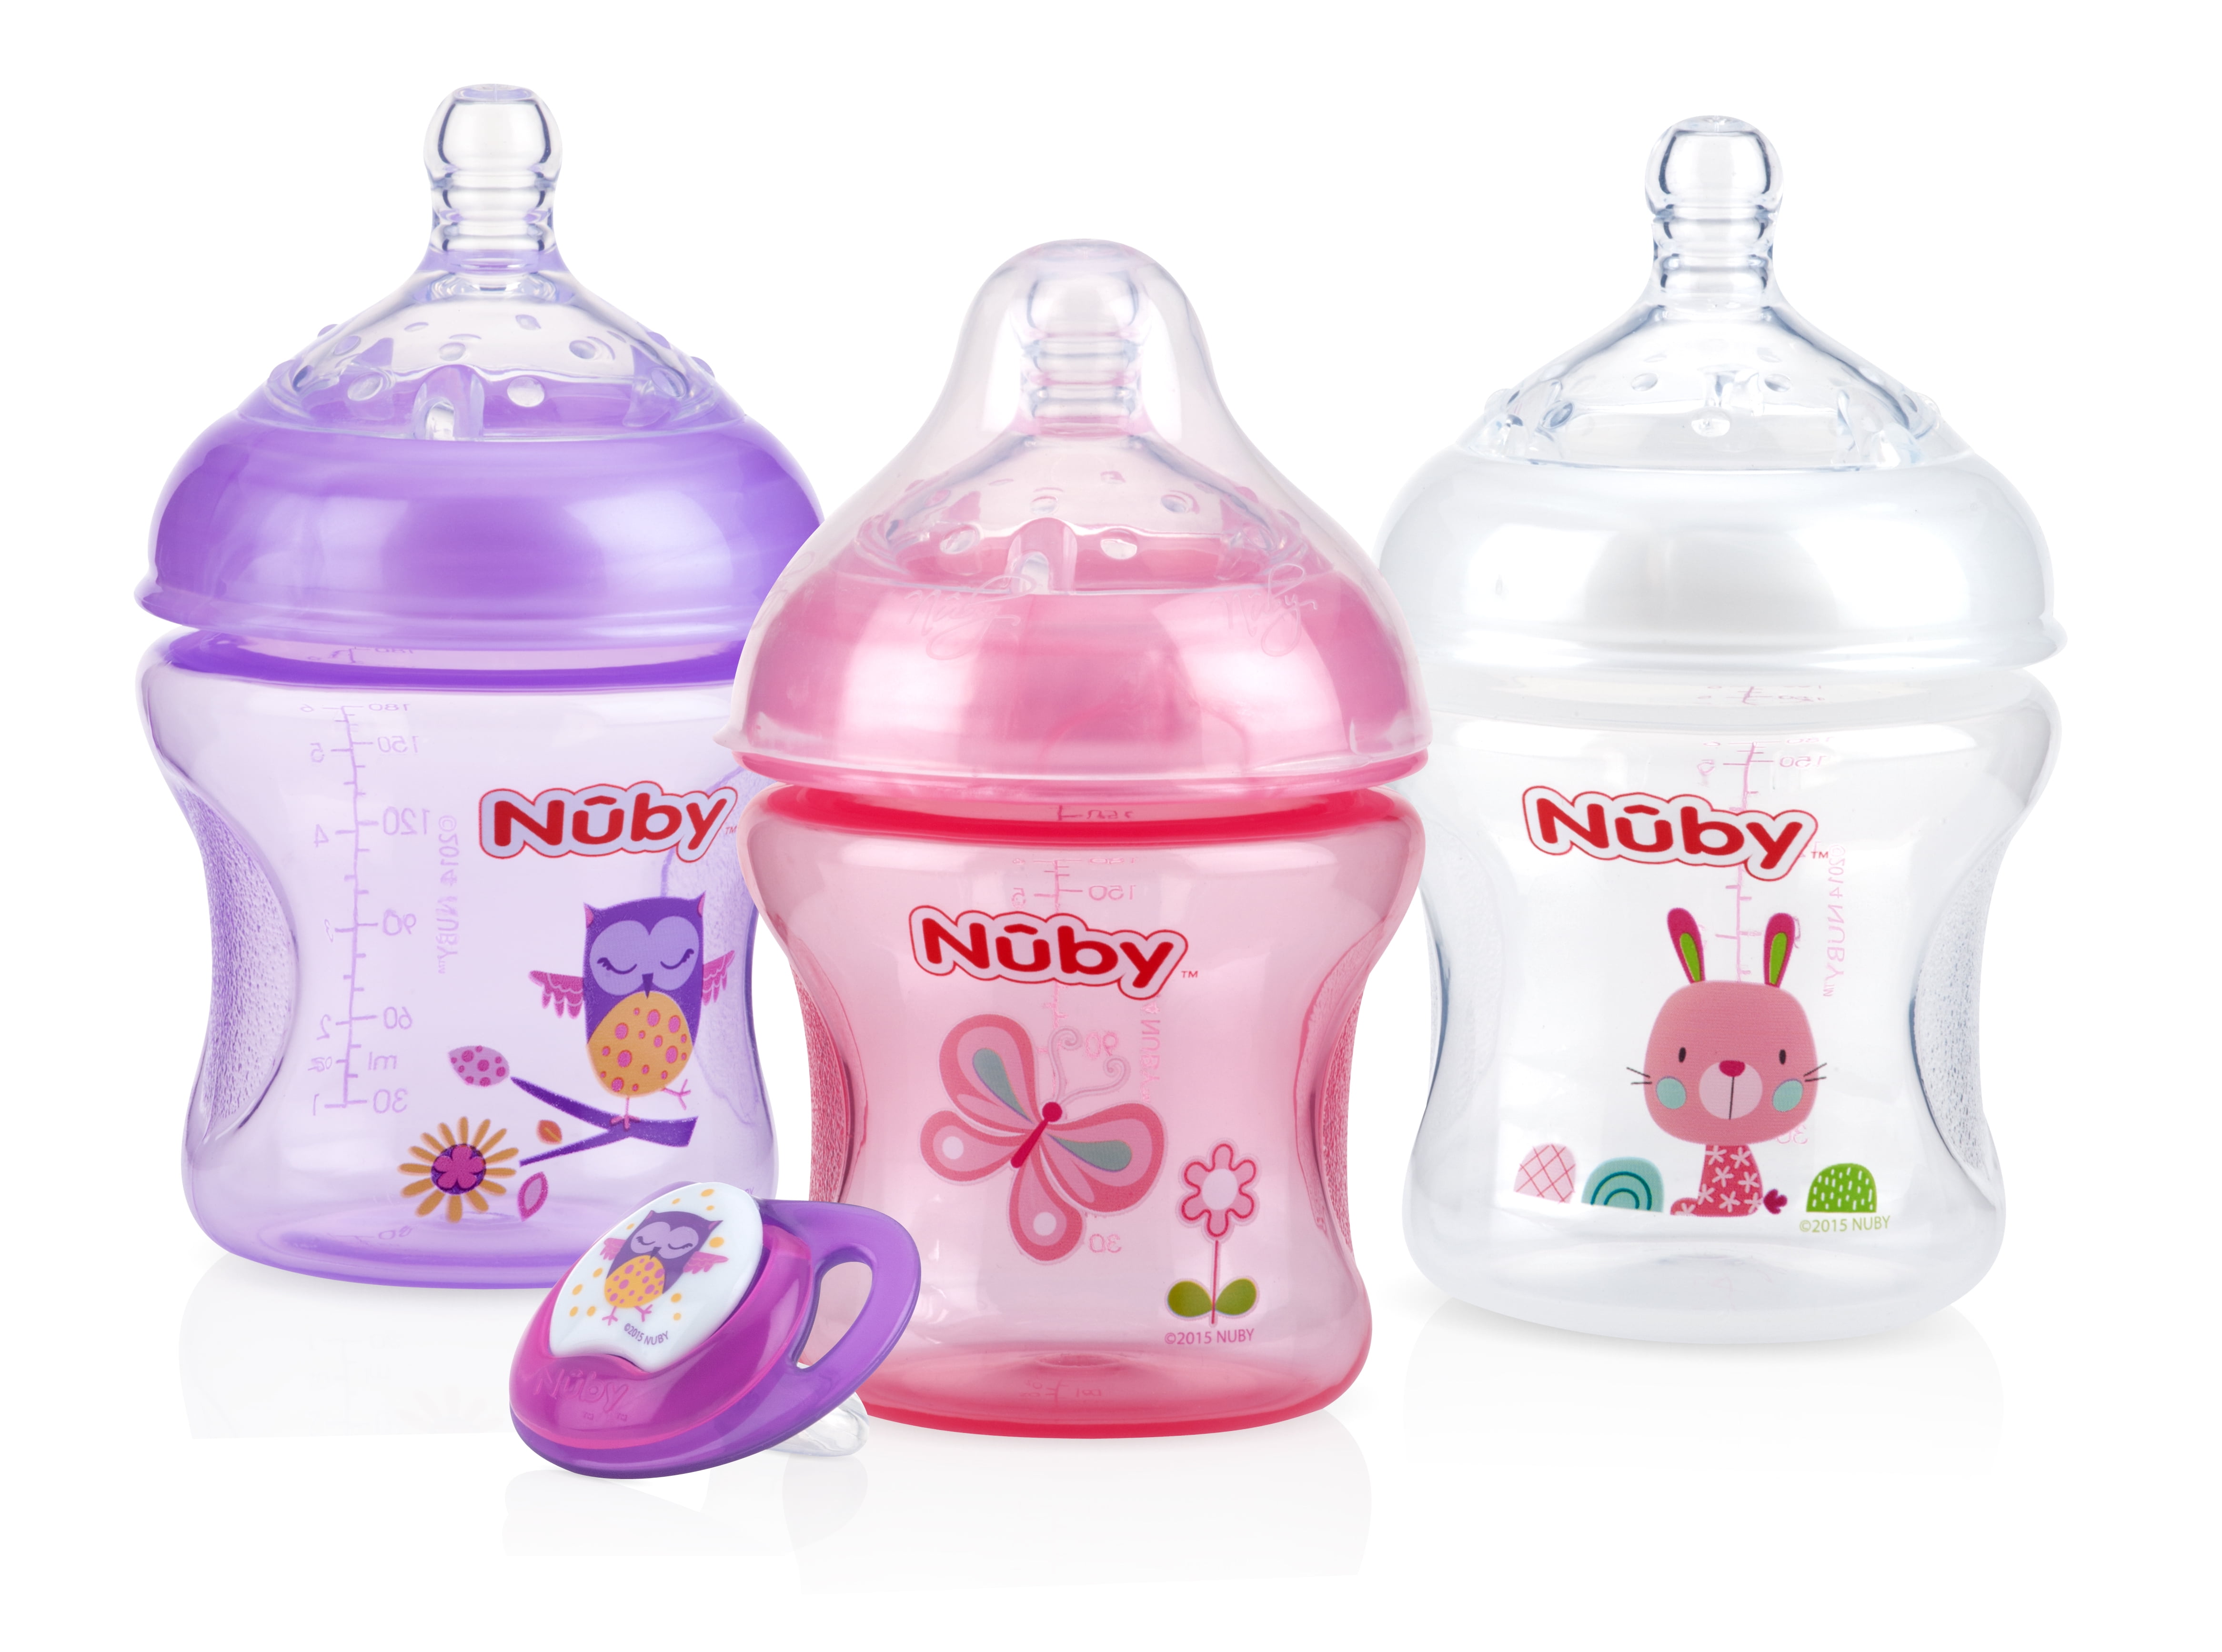 nuby bottles